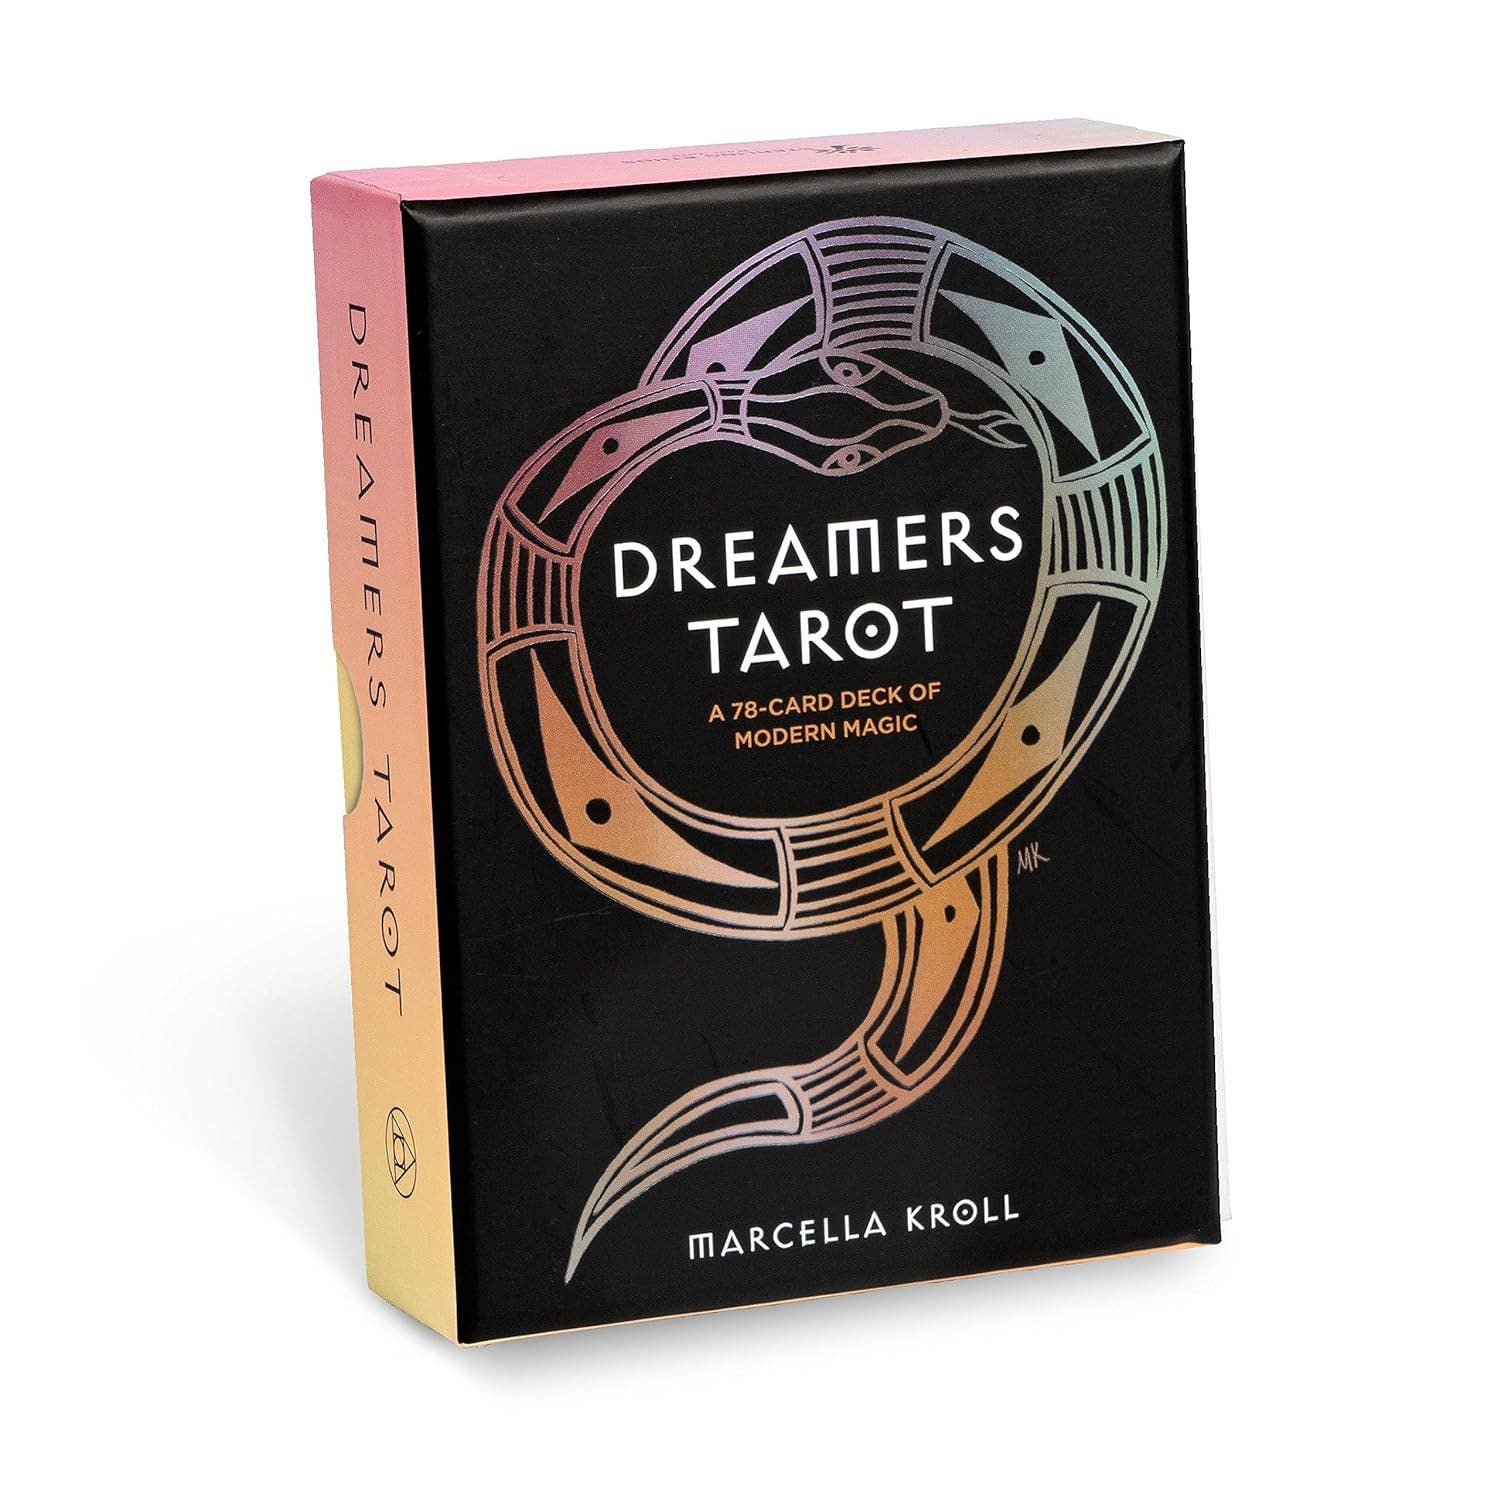 Dreamers Tarot Deck by Marcella Kroll